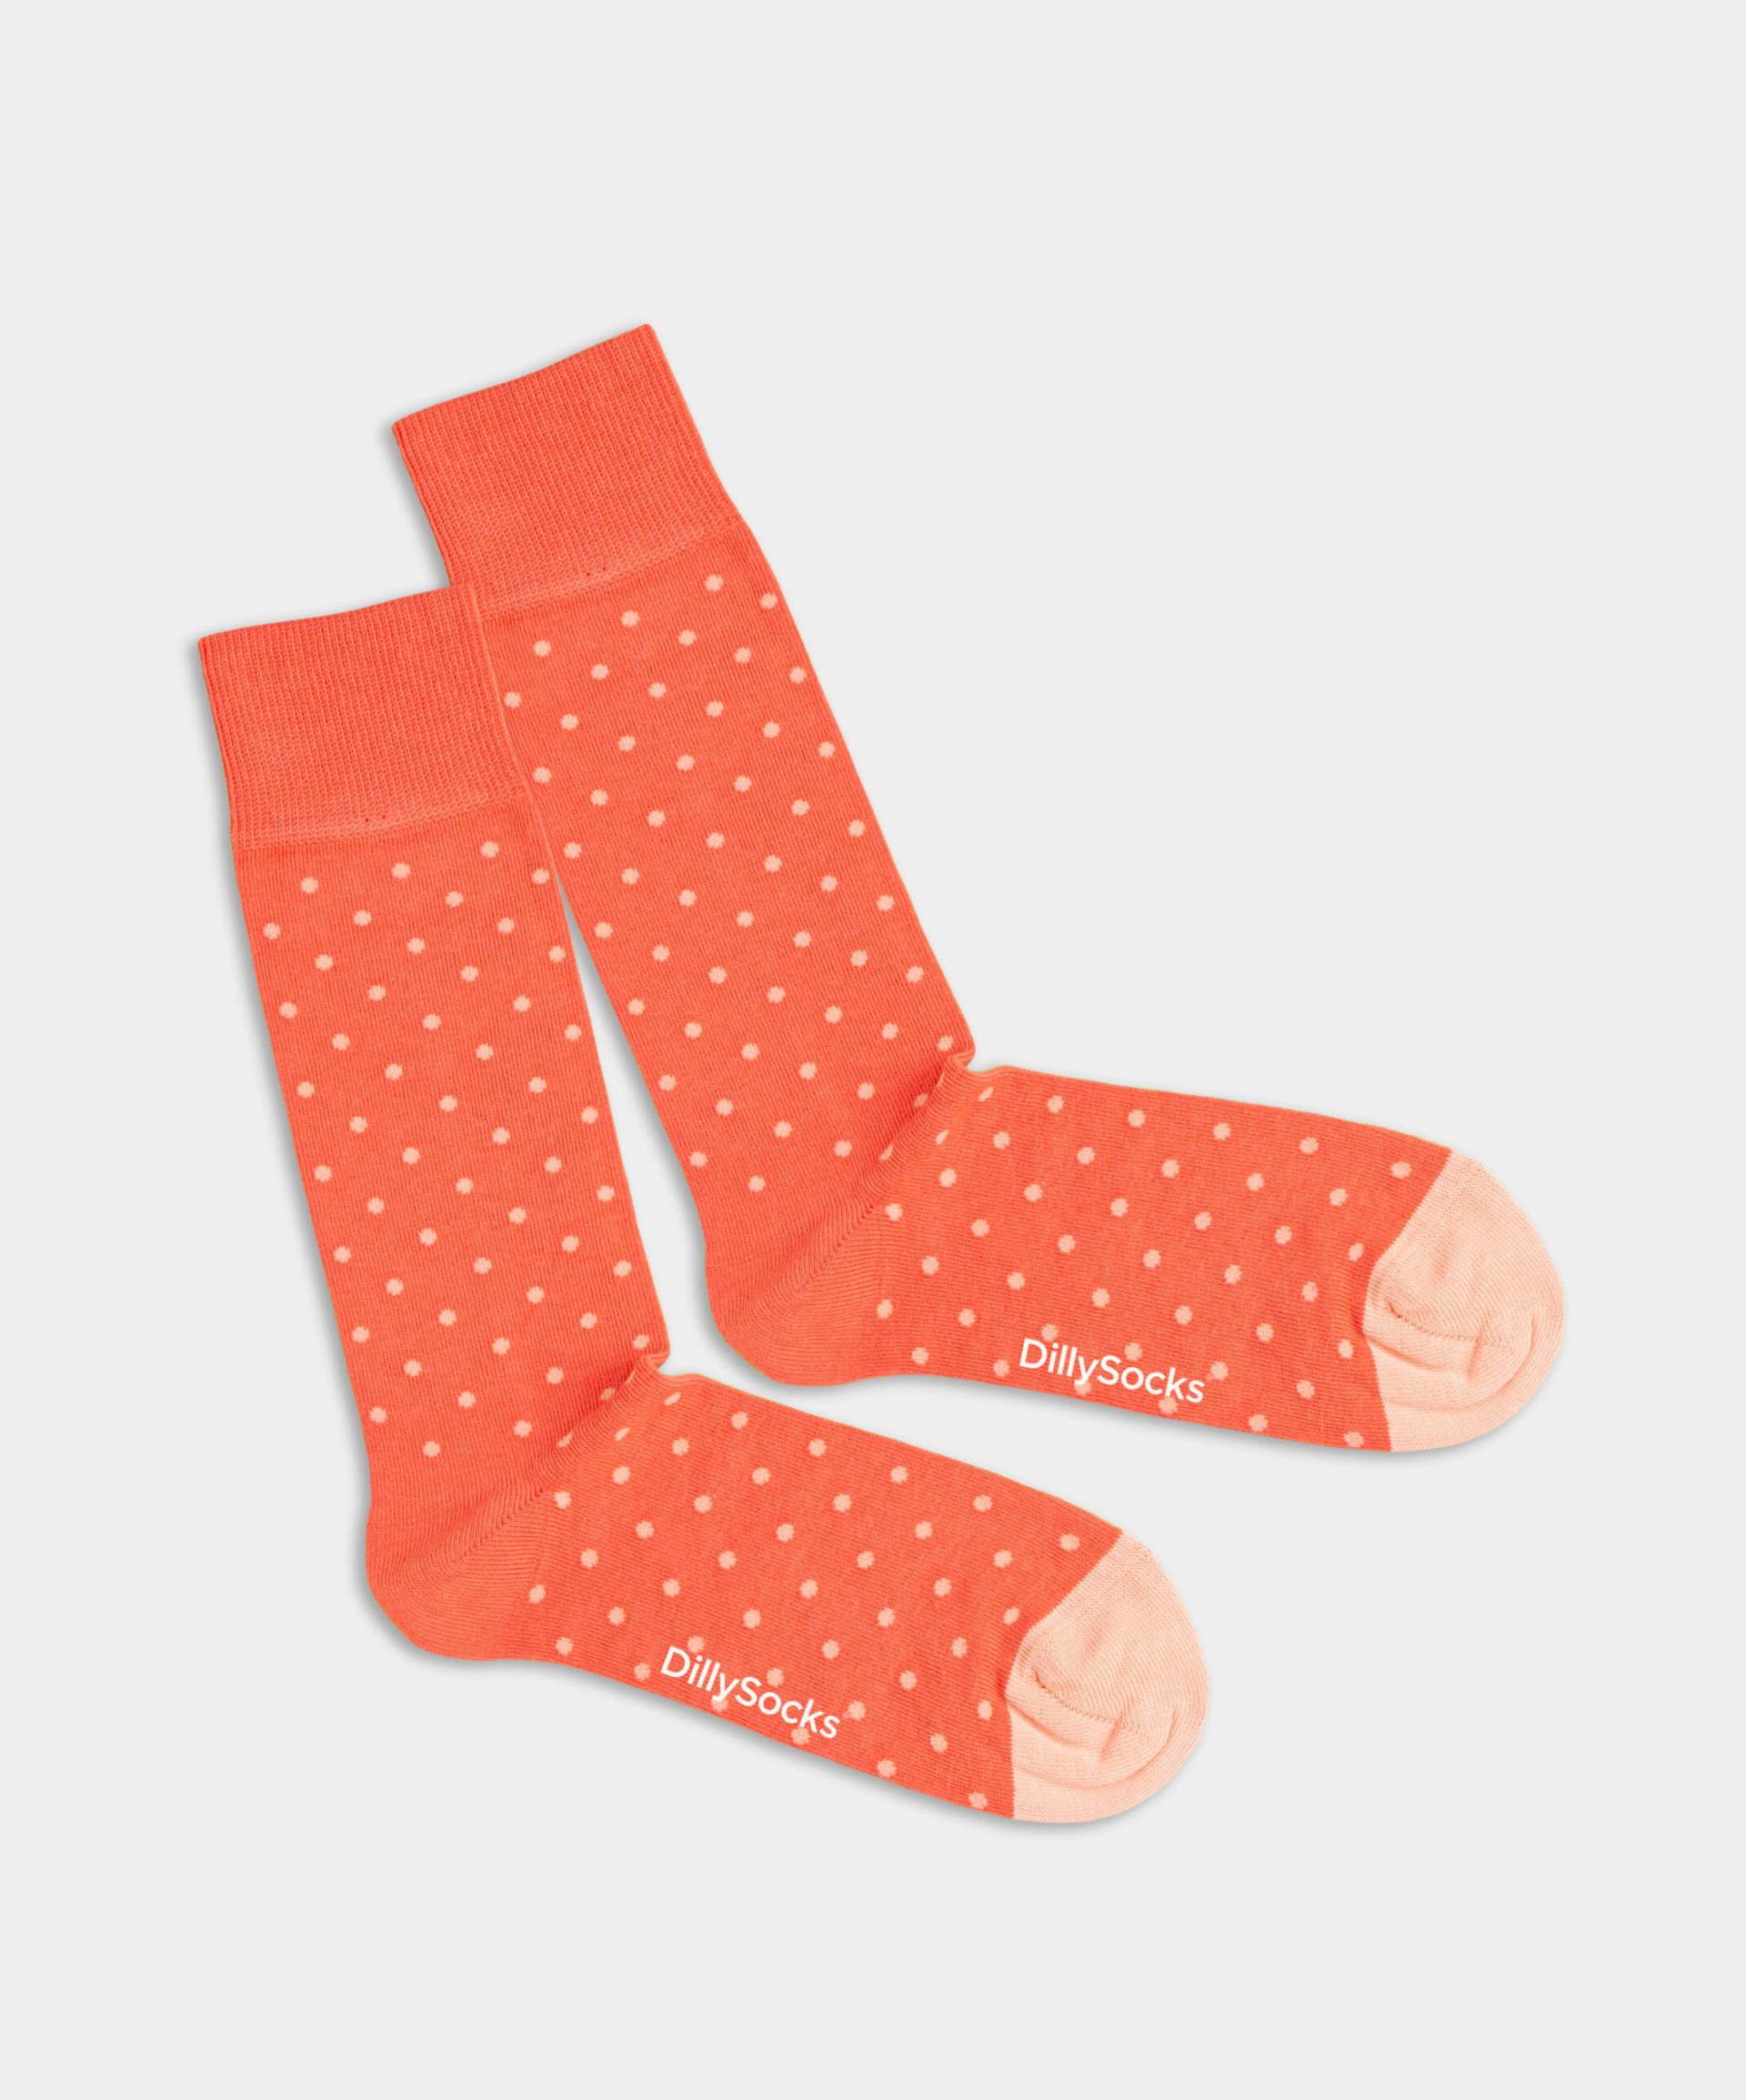 - Socken in Orange mit Punkte Motiv/Muster von DillySocks